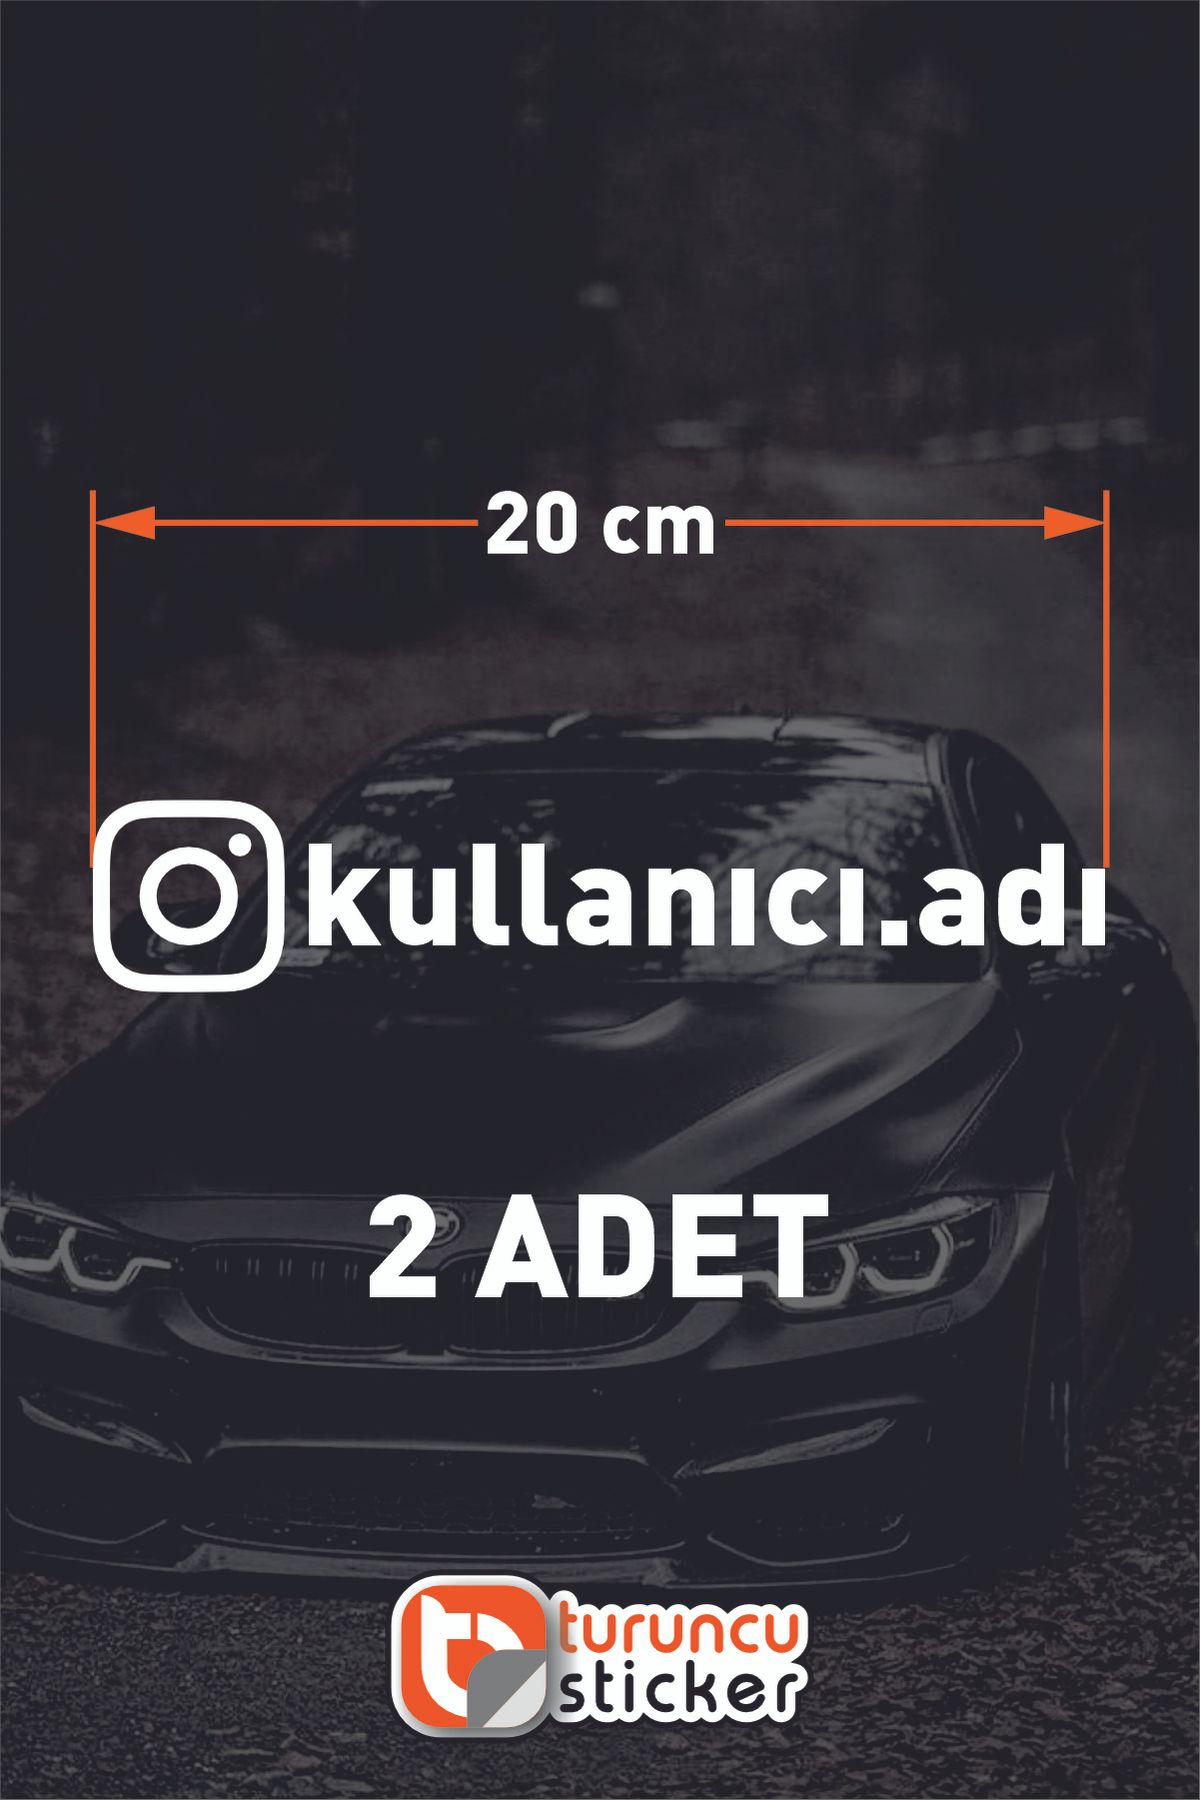 Turuncu Instagram Logolu Kullanıcı Adı - 2 Adet 20 Cm -   Araç Kelebek Cam Sticker Etiketi Folyo Kesim